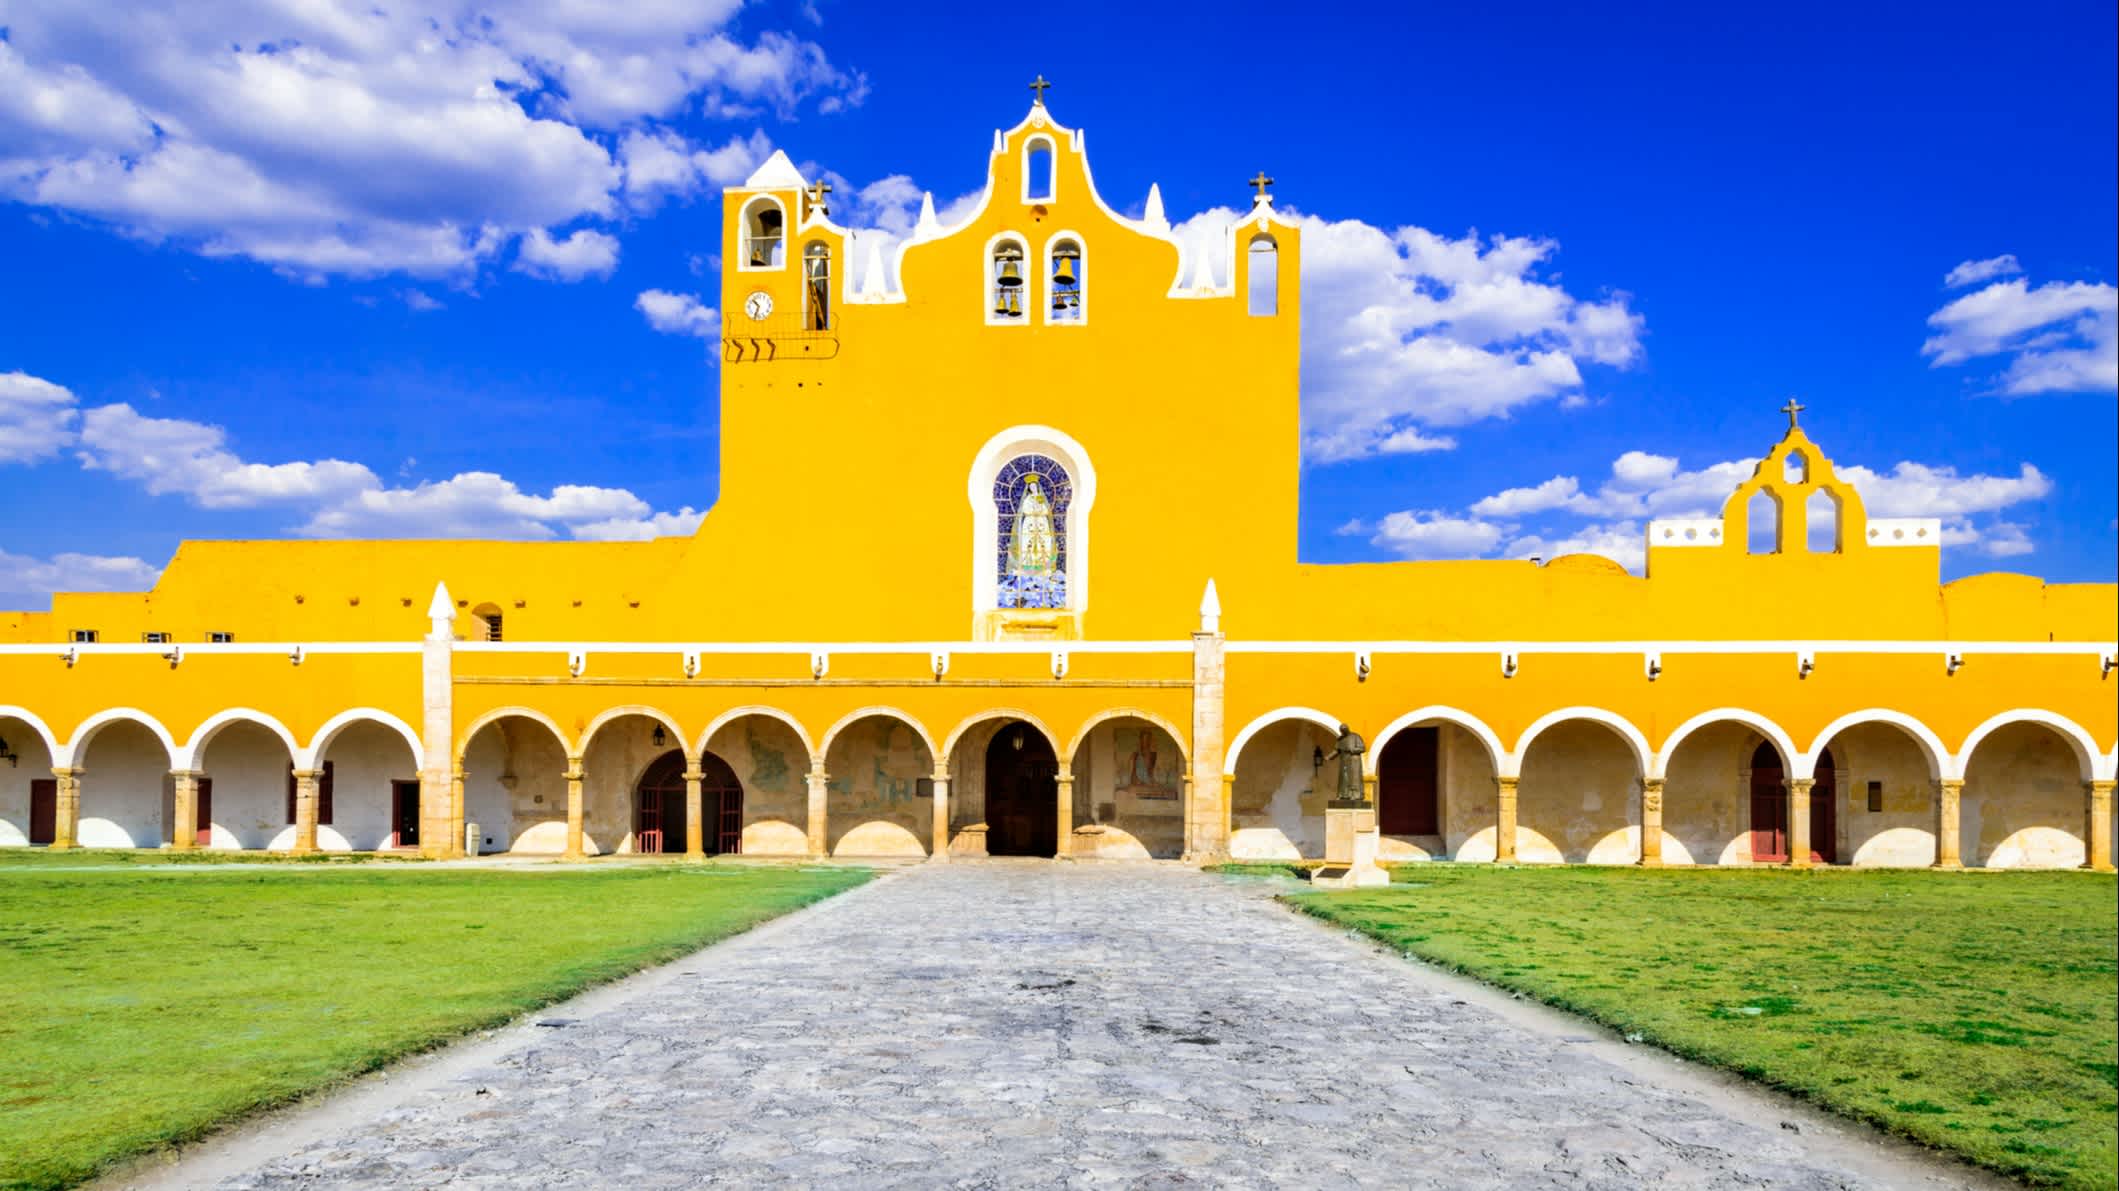 Vue du monastère colonial de San Antonio à Izamal, au Yucatán, au Mexique.

